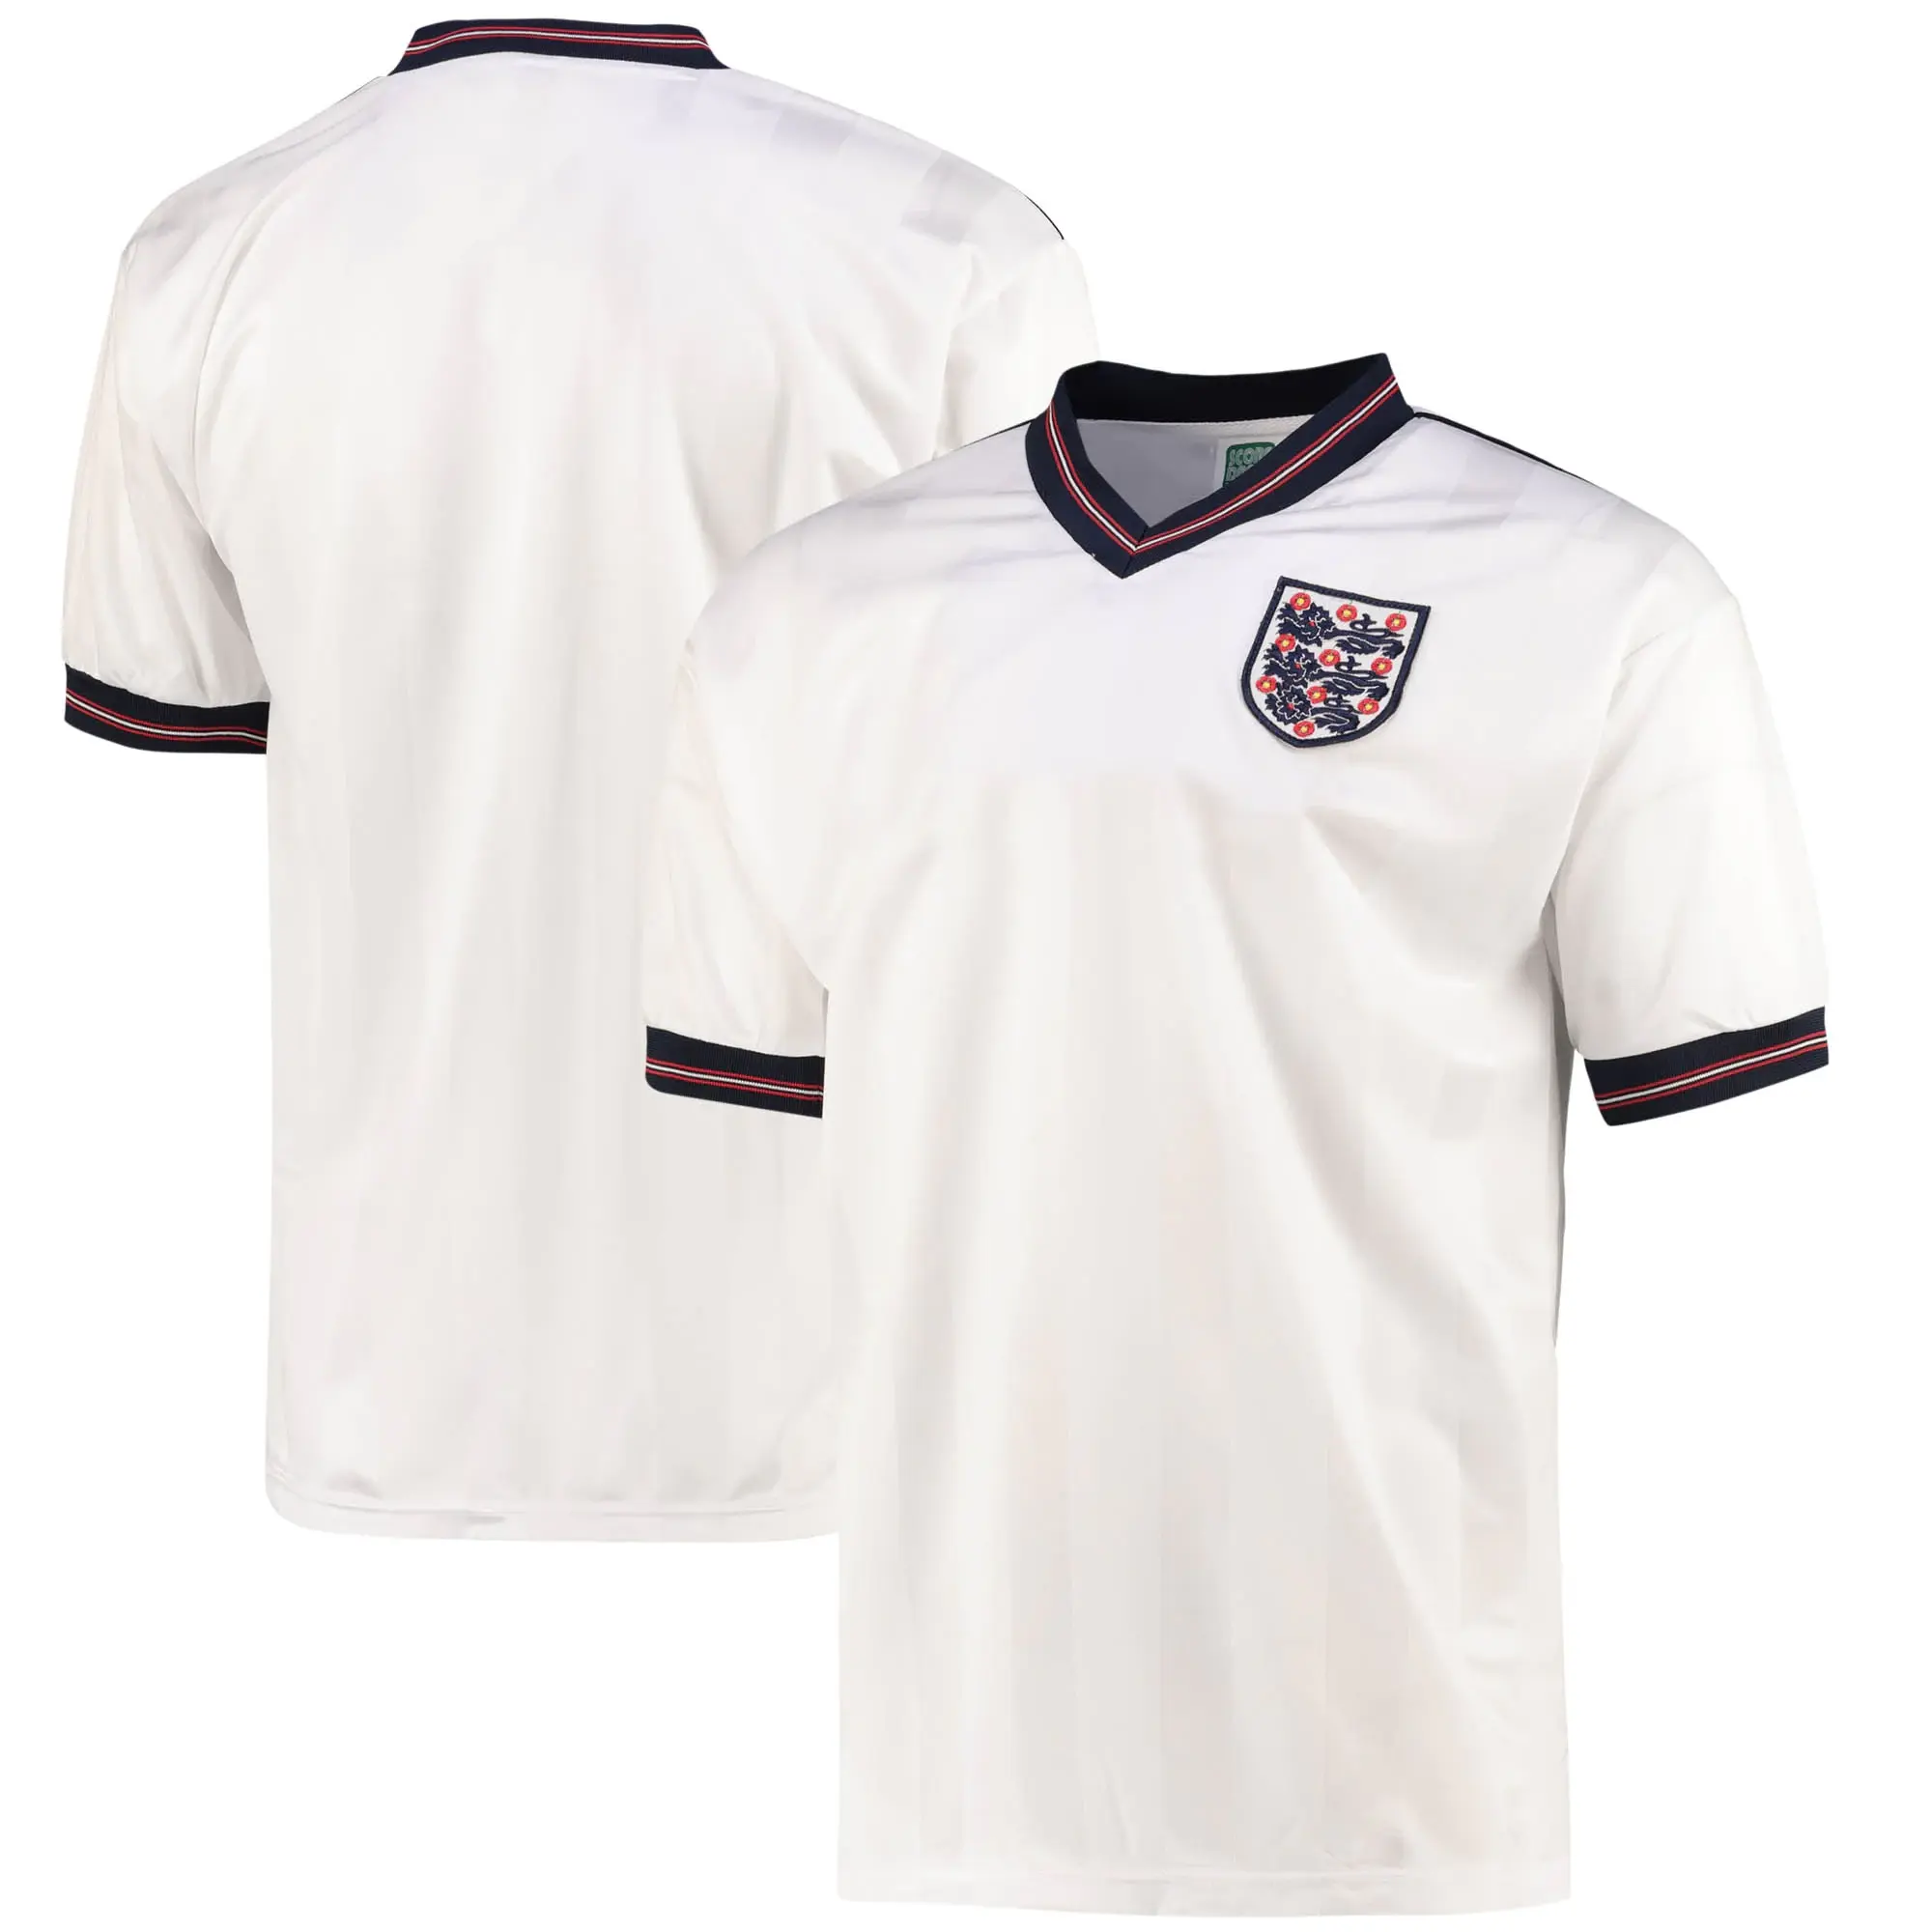 Score Draw England Mens SS Home Shirt 1986